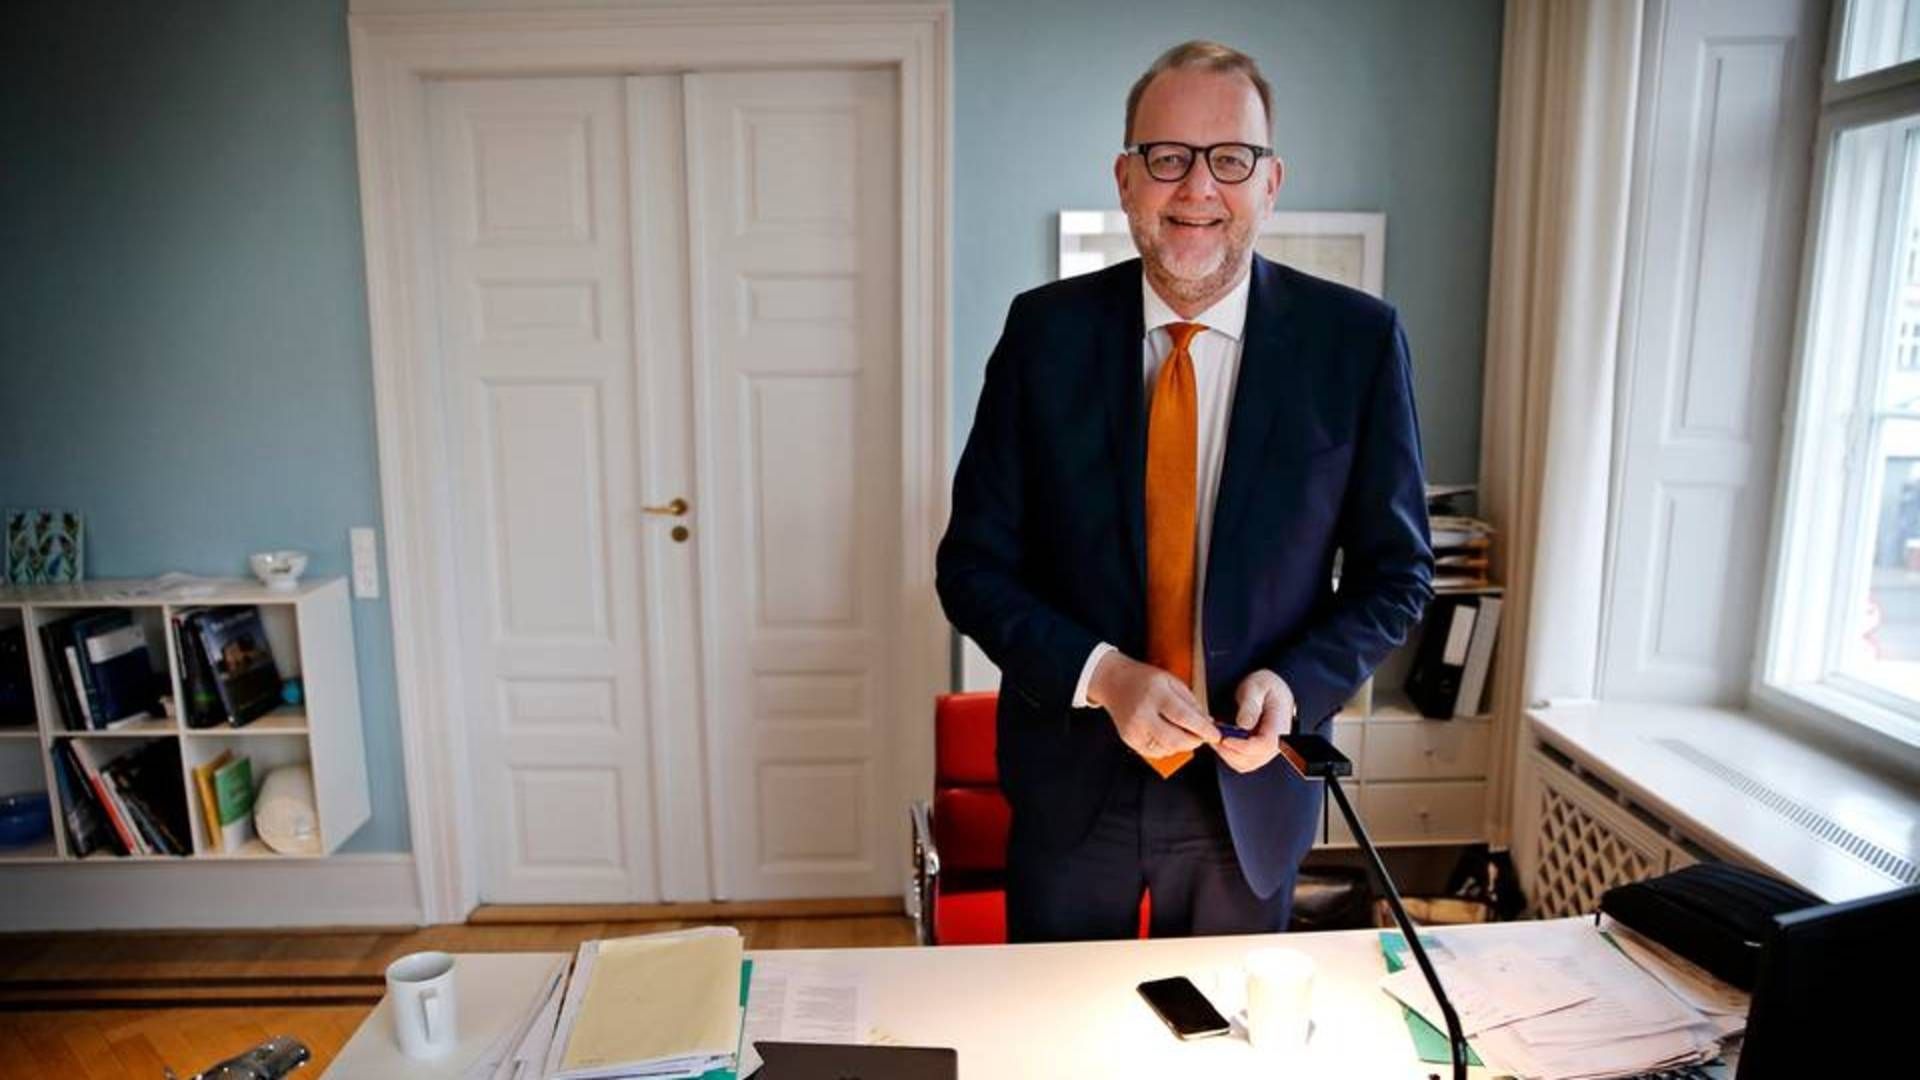 Den påståede udhulning af ordningen skete dog mestendels ved Lars Chr. Lilleholts (V) skrivebord, mener Denfo. | Foto: Jens Dresling / Politiken